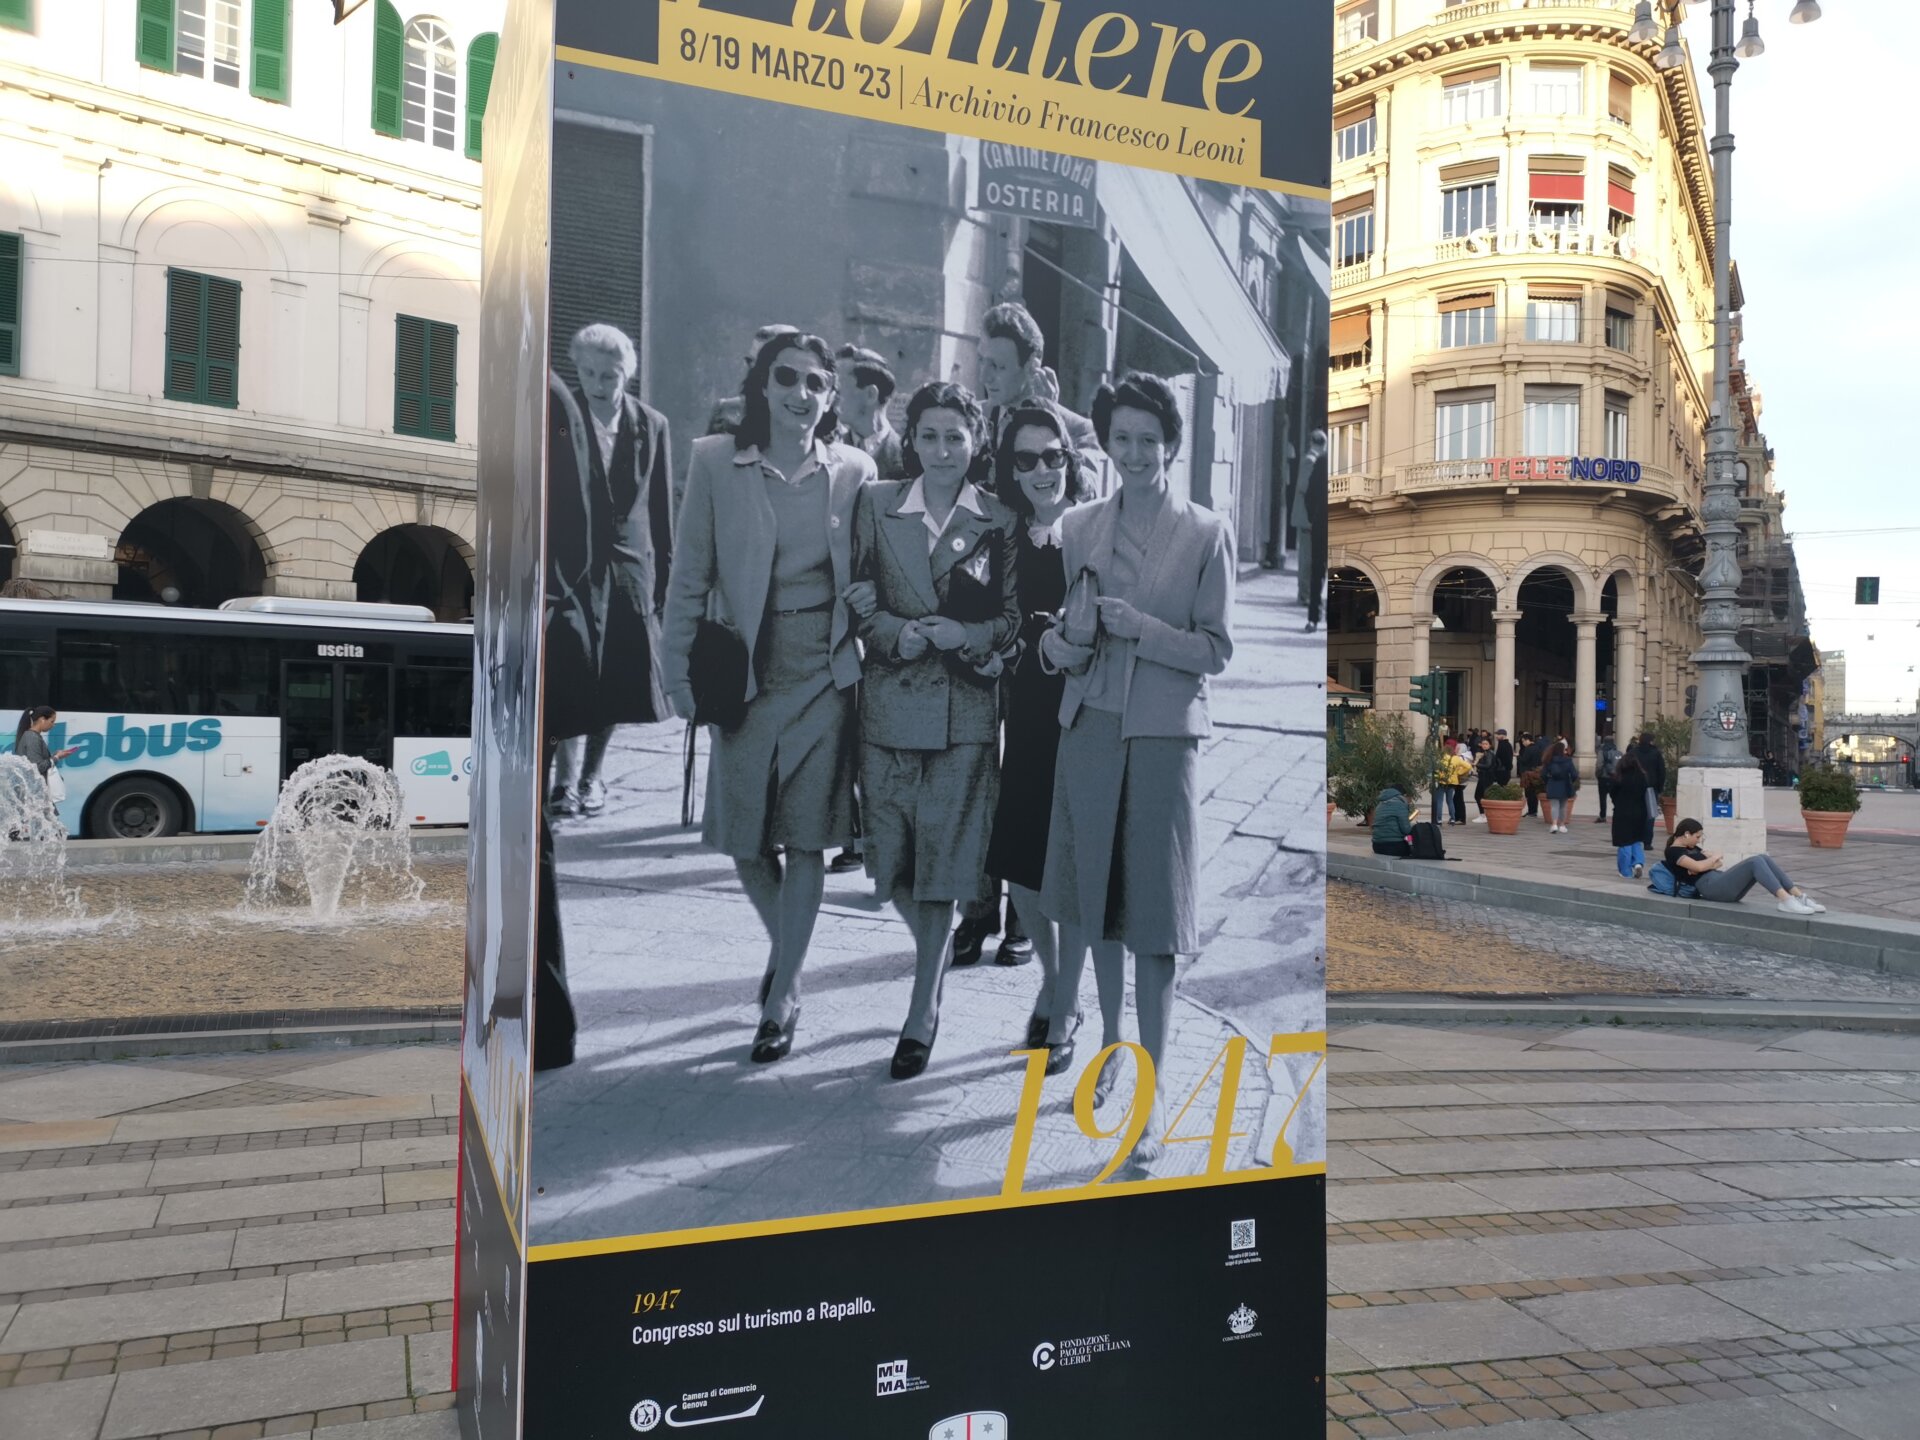 1947, Congresso sul turismo a Rapallo